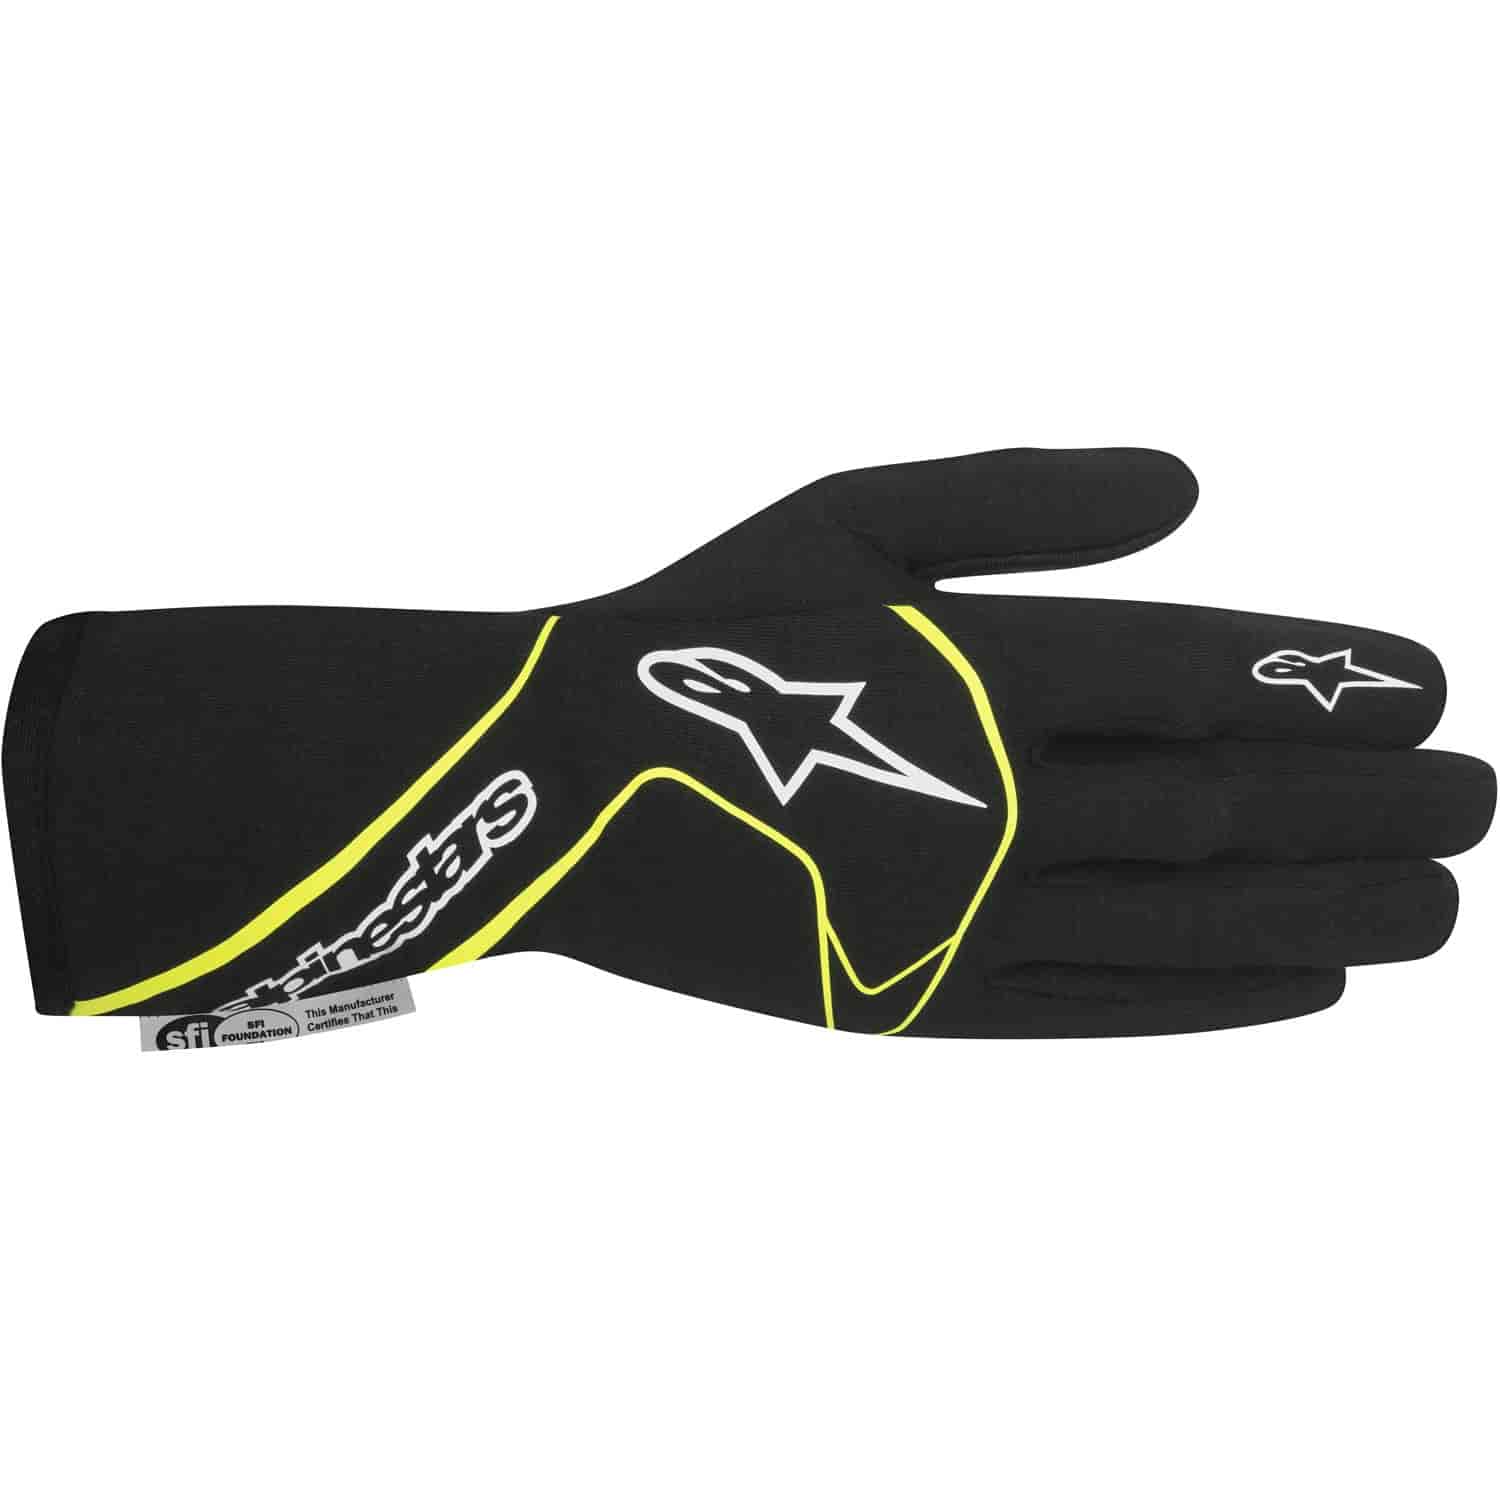 Tech 1 Race Gloves Black/Yellow Fluorescent SFI 3.3/5